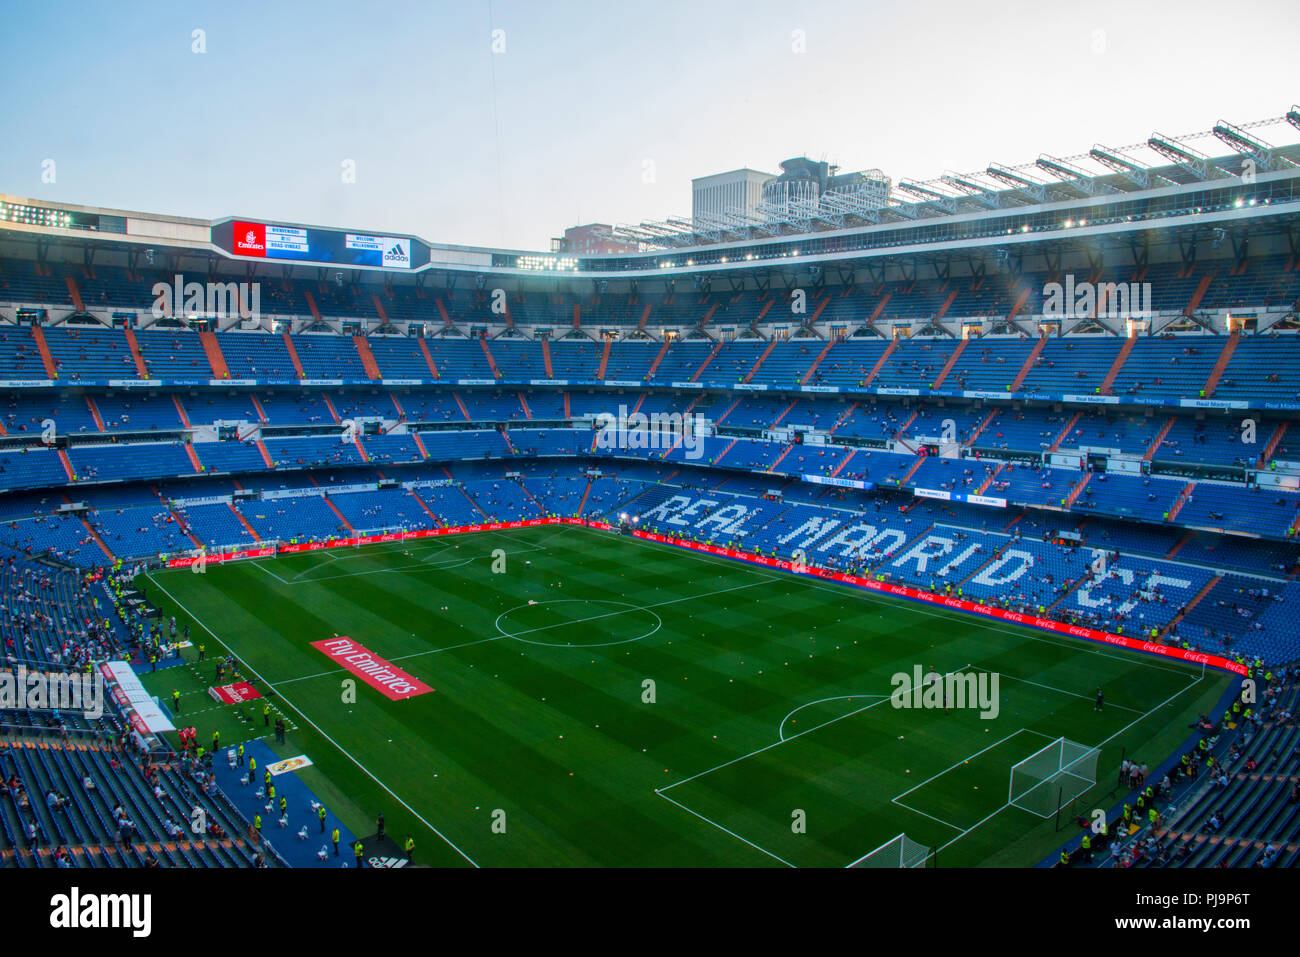 El estadio Santiago Bernabeu antes de un partido de fútbol. Madrid, España. Foto de stock